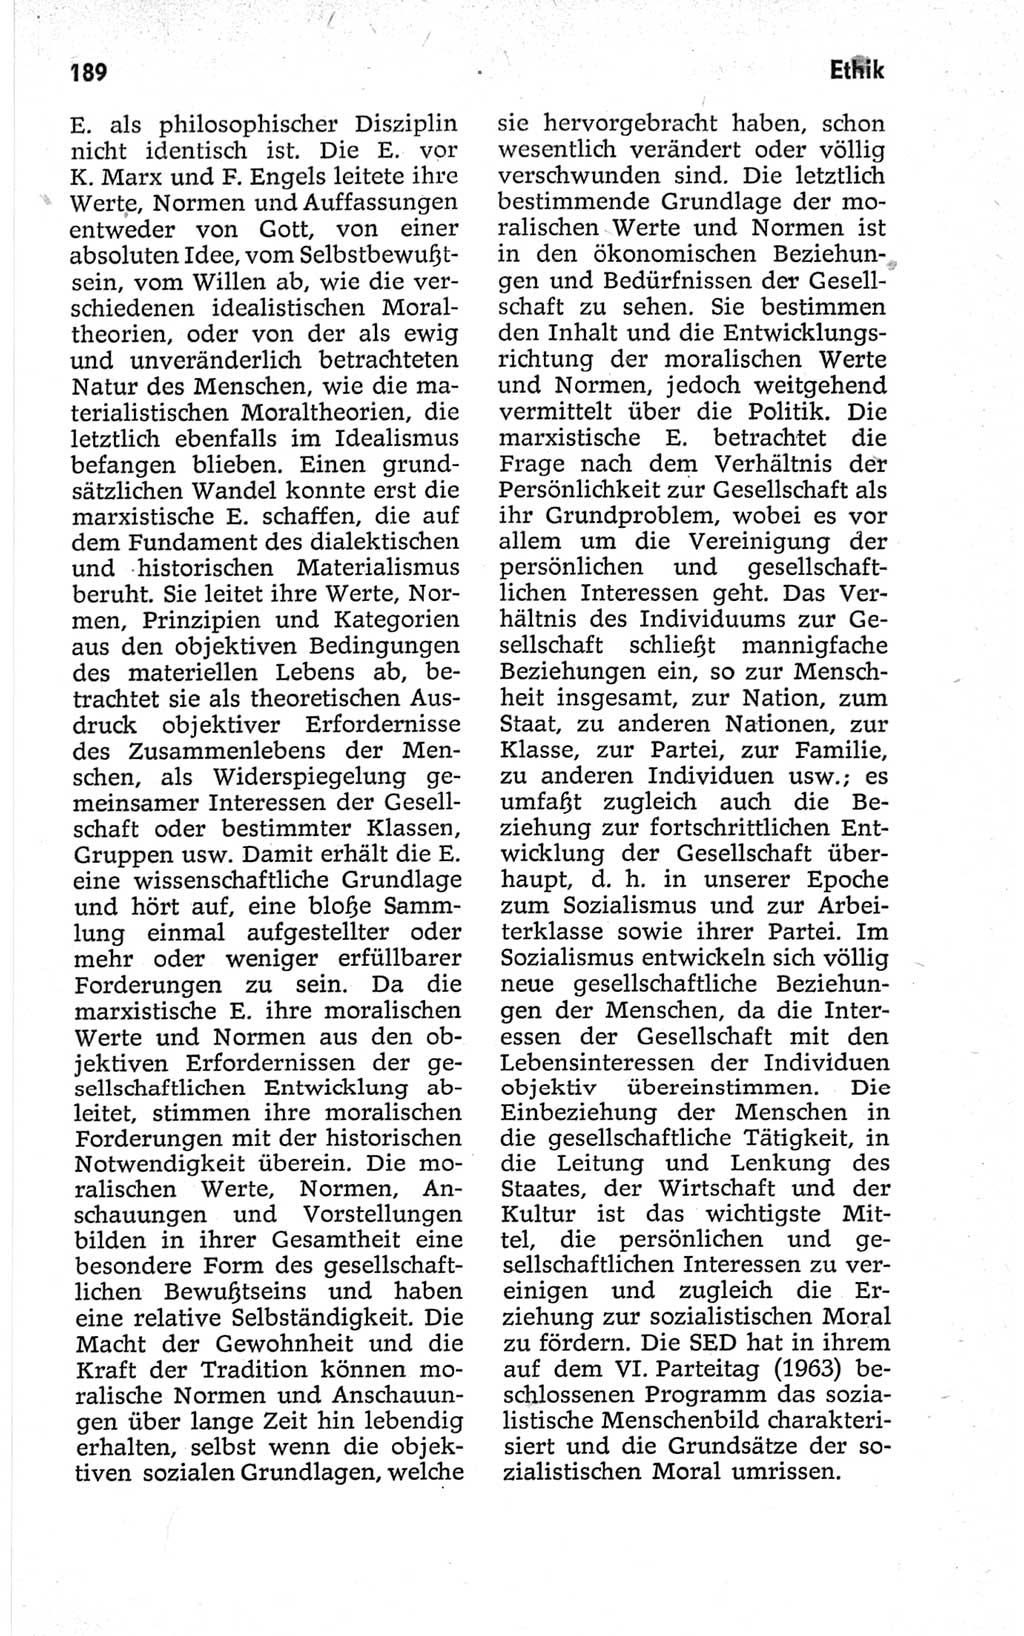 Kleines politisches Wörterbuch [Deutsche Demokratische Republik (DDR)] 1967, Seite 189 (Kl. pol. Wb. DDR 1967, S. 189)